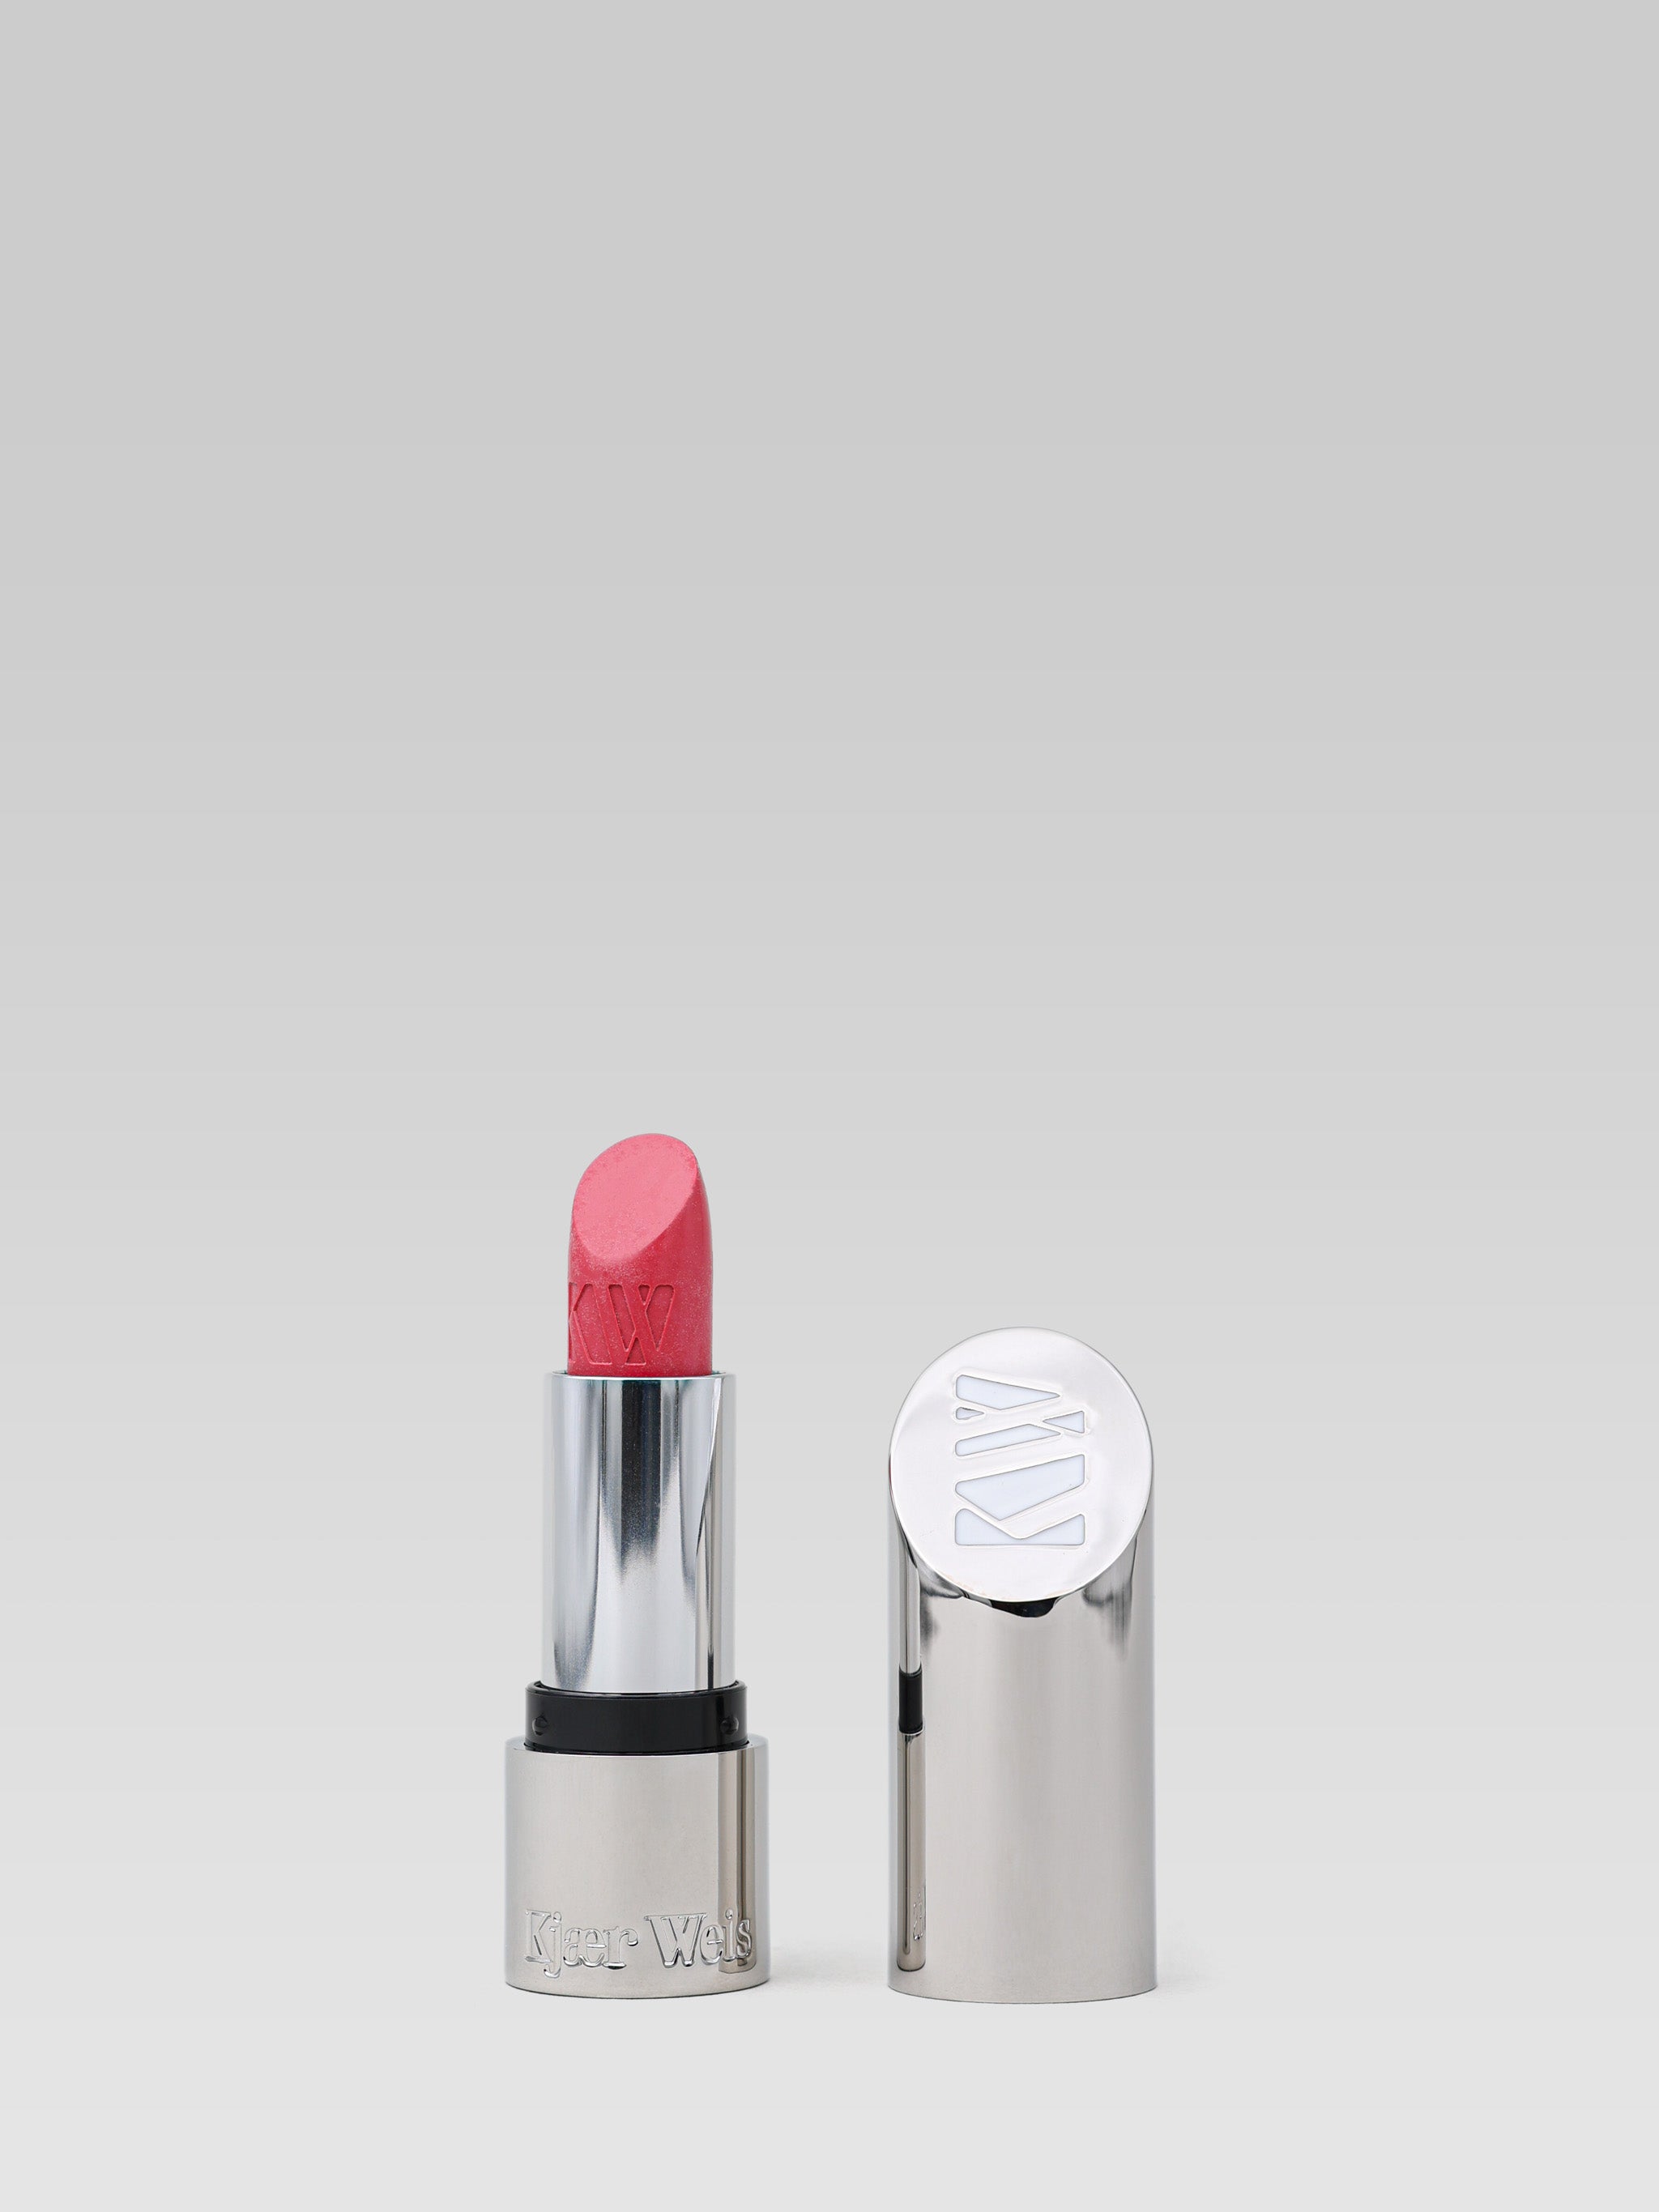 Kjaer Weis Lipstick Empower product shot 